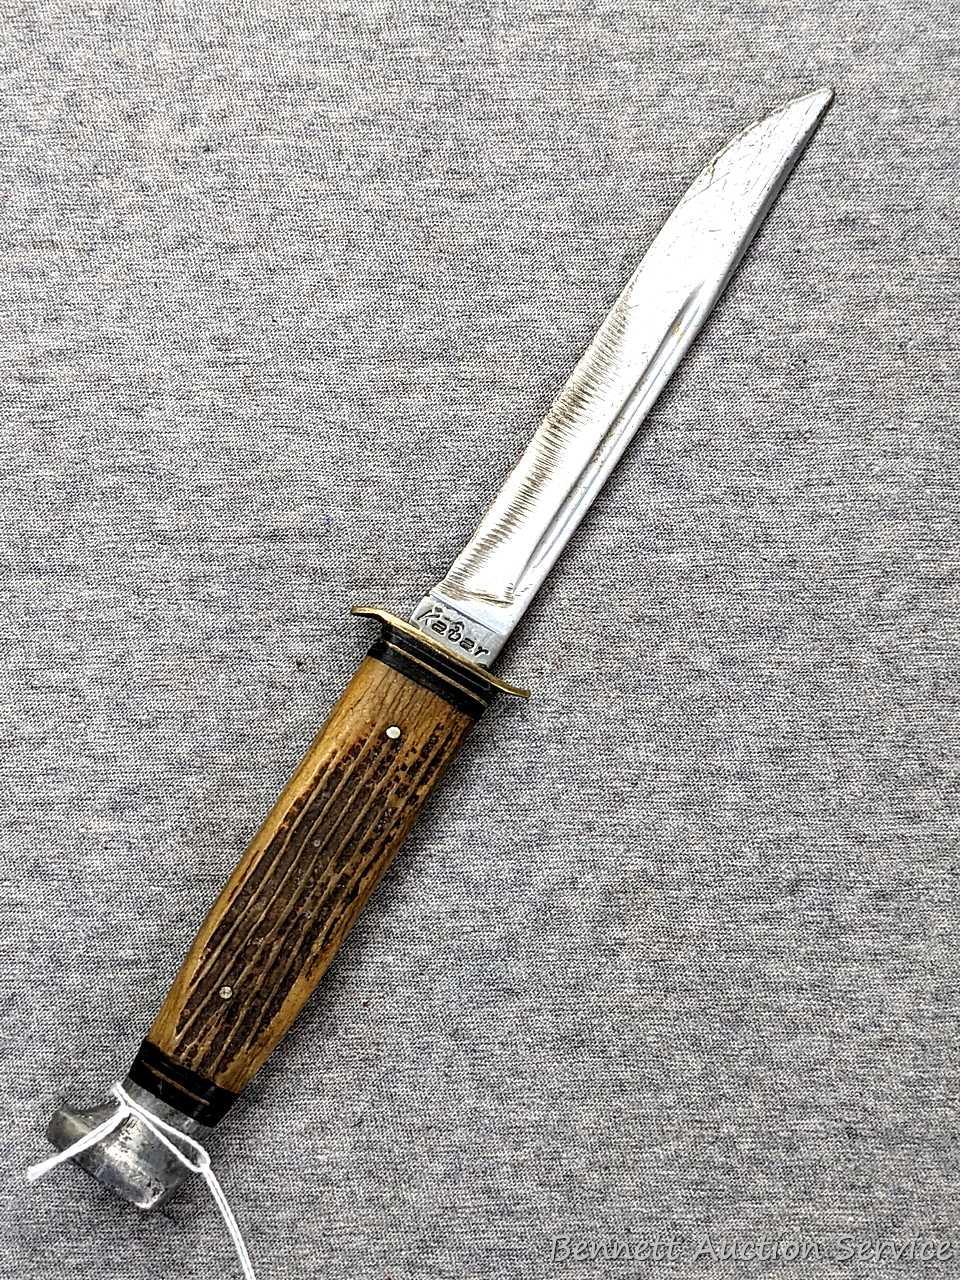 KA-BAR Stainless Steel Blade Original Vintage Knives for sale